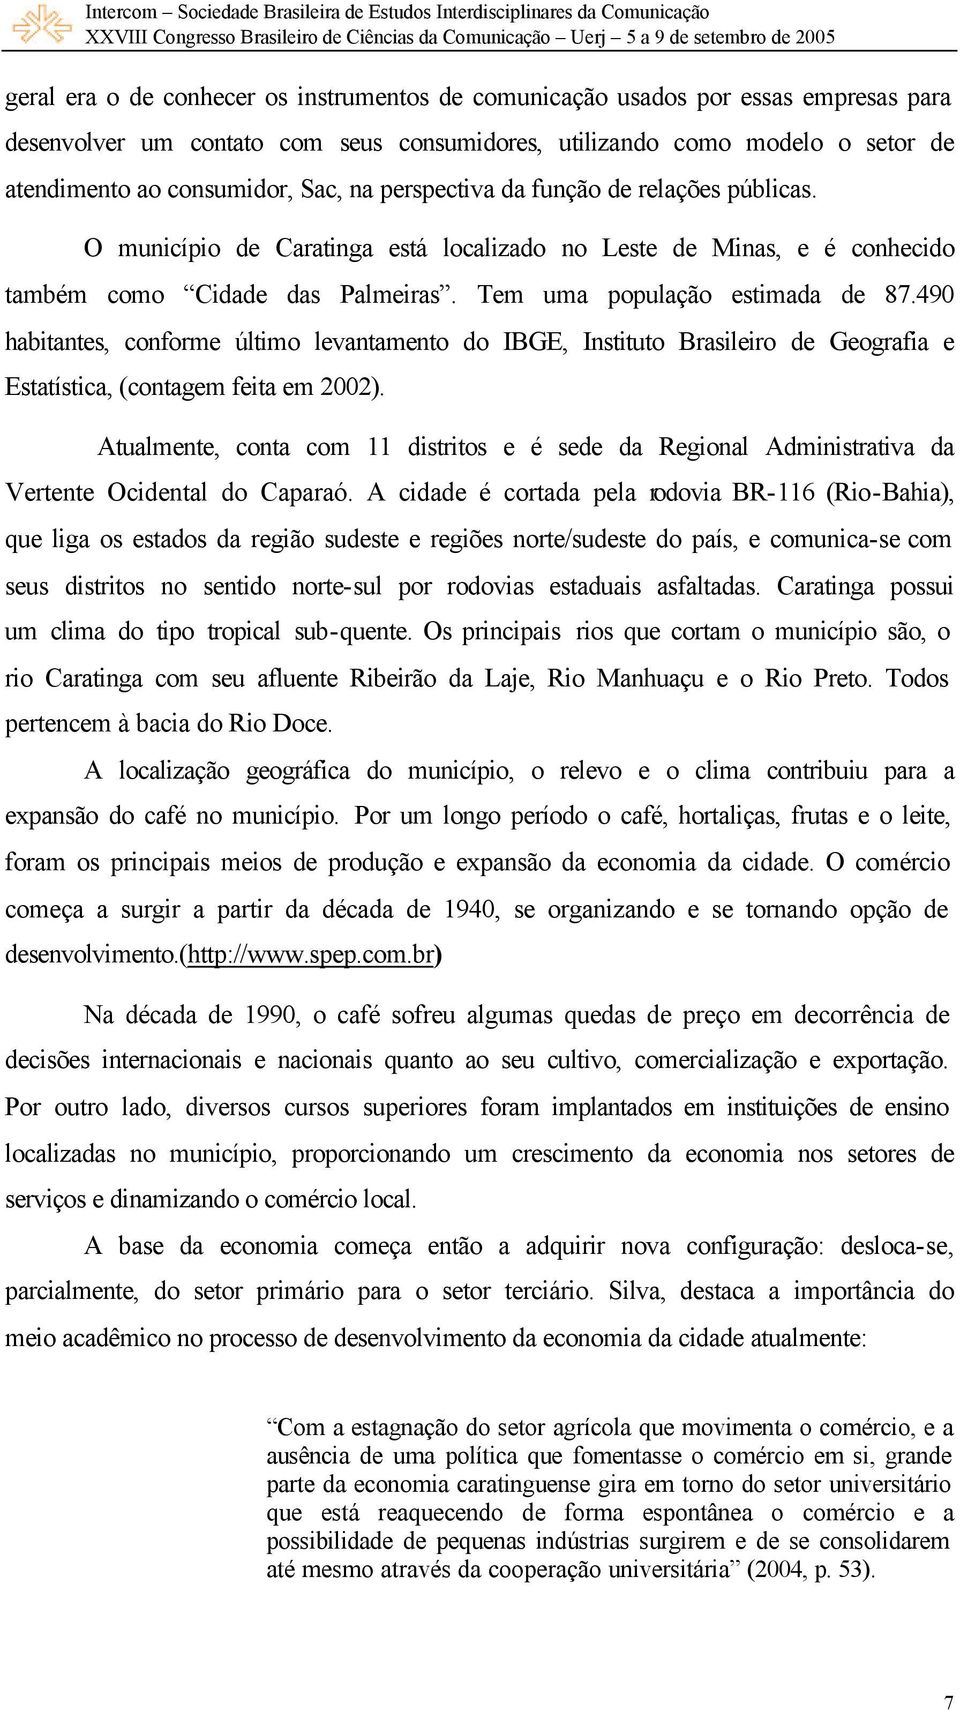 490 habitantes, conforme último levantamento do IBGE, Instituto Brasileiro de Geografia e Estatística, (contagem feita em 2002).